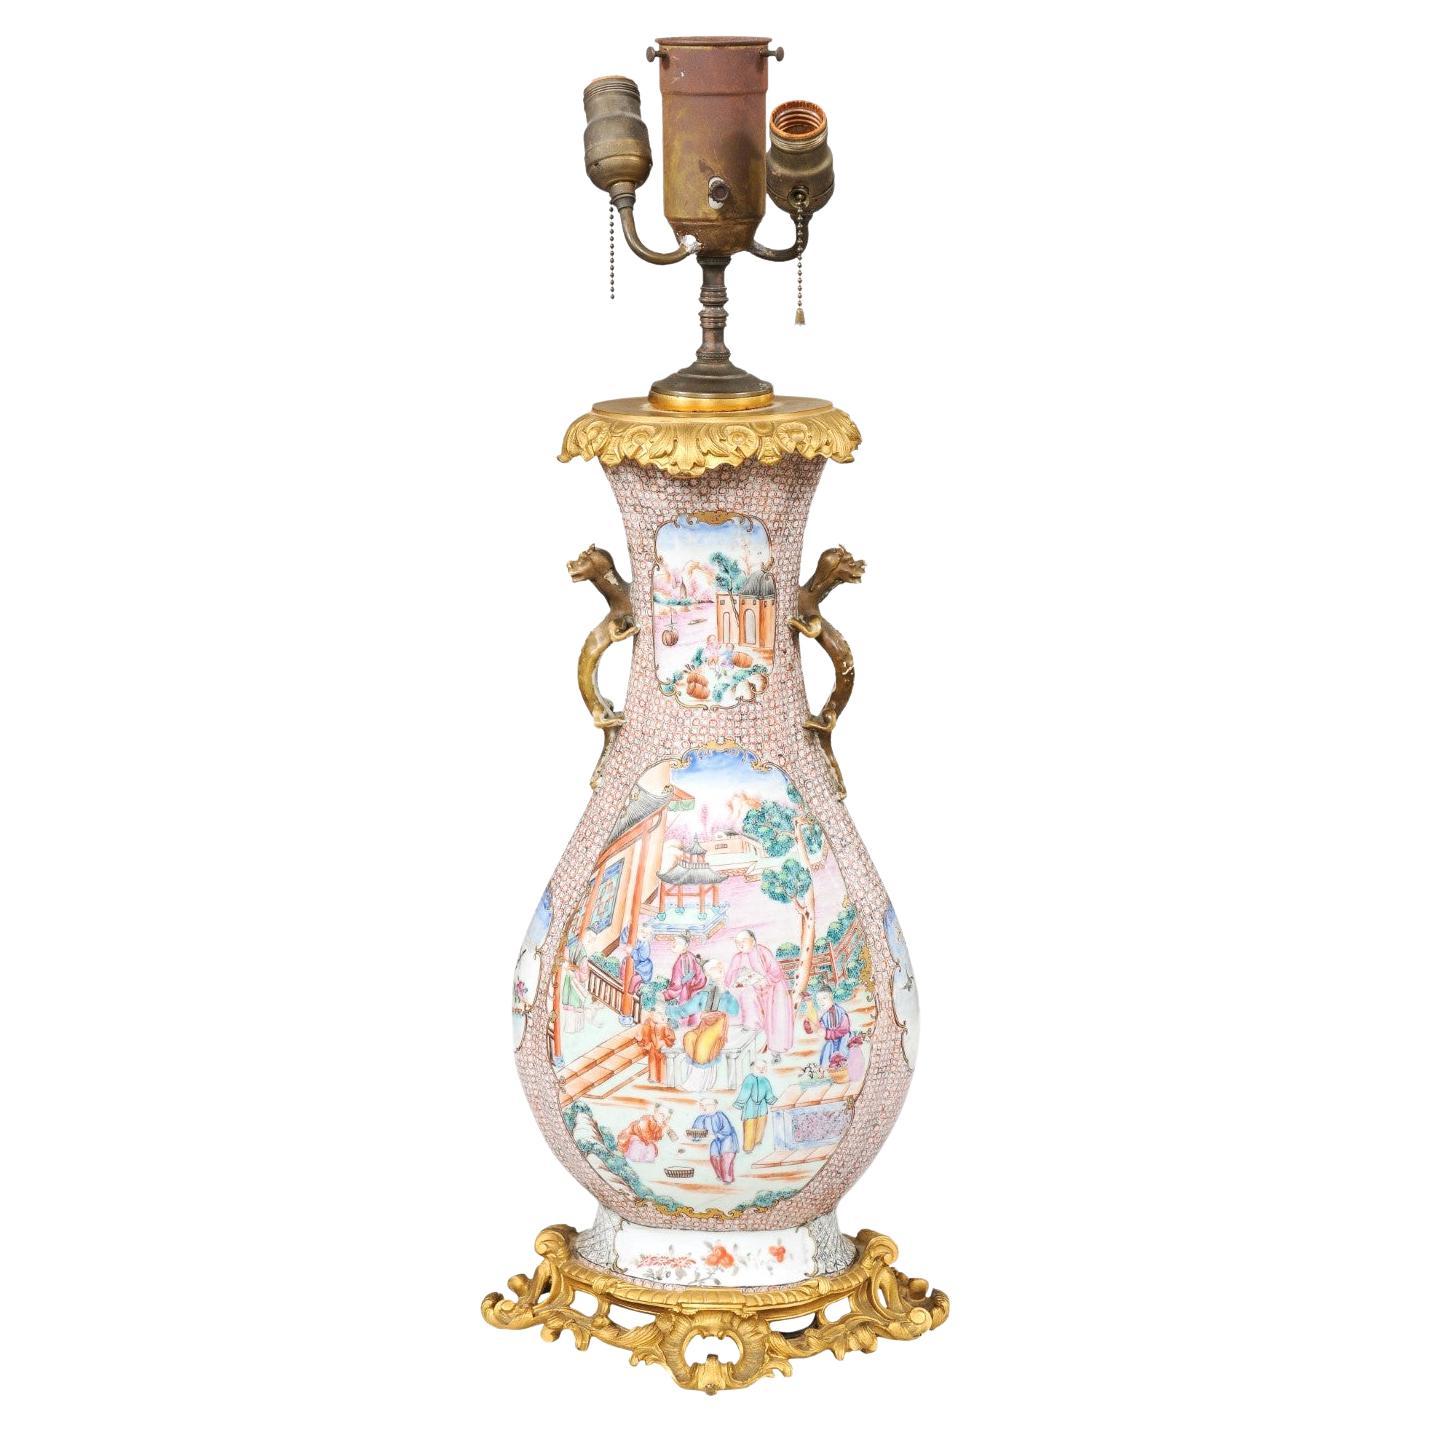  Grand vase d'exportation chinoise du 18ème siècle monté en bronze mandarin, câblé comme une lampe en vente